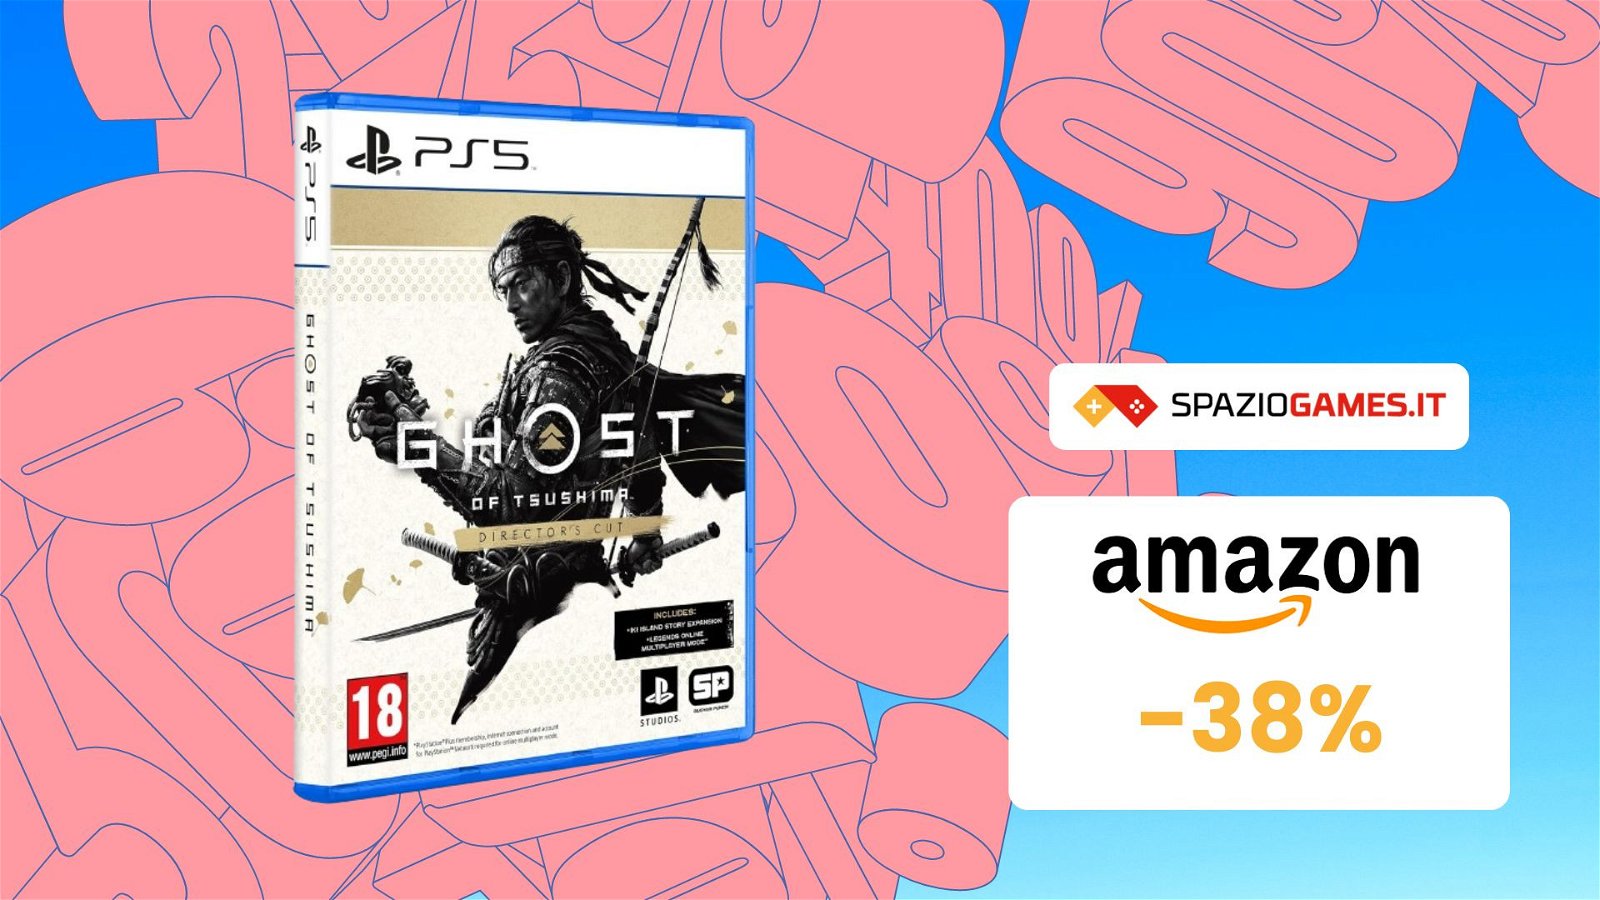 Ghost of Tsushima Director’s Cut per PS5 a un SUPER prezzo! -38%